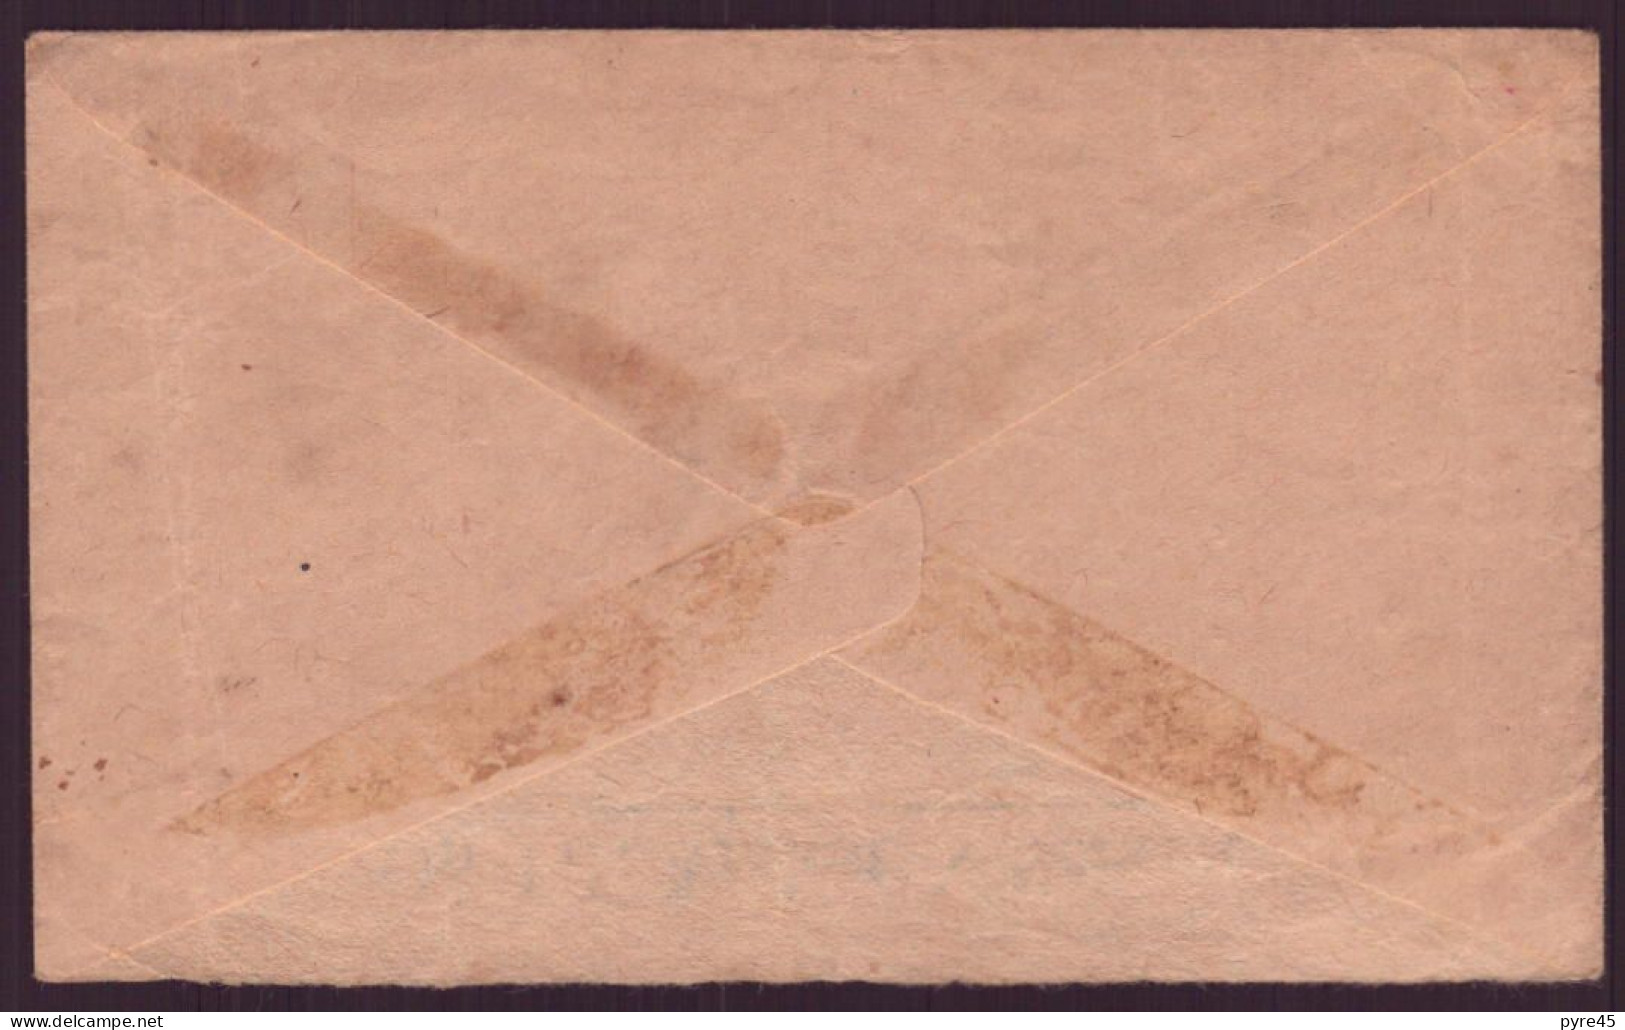 Grande-Bretagne, Enveloppe De 1945 Pour Paris, Tampon De Vérification - Non Classés